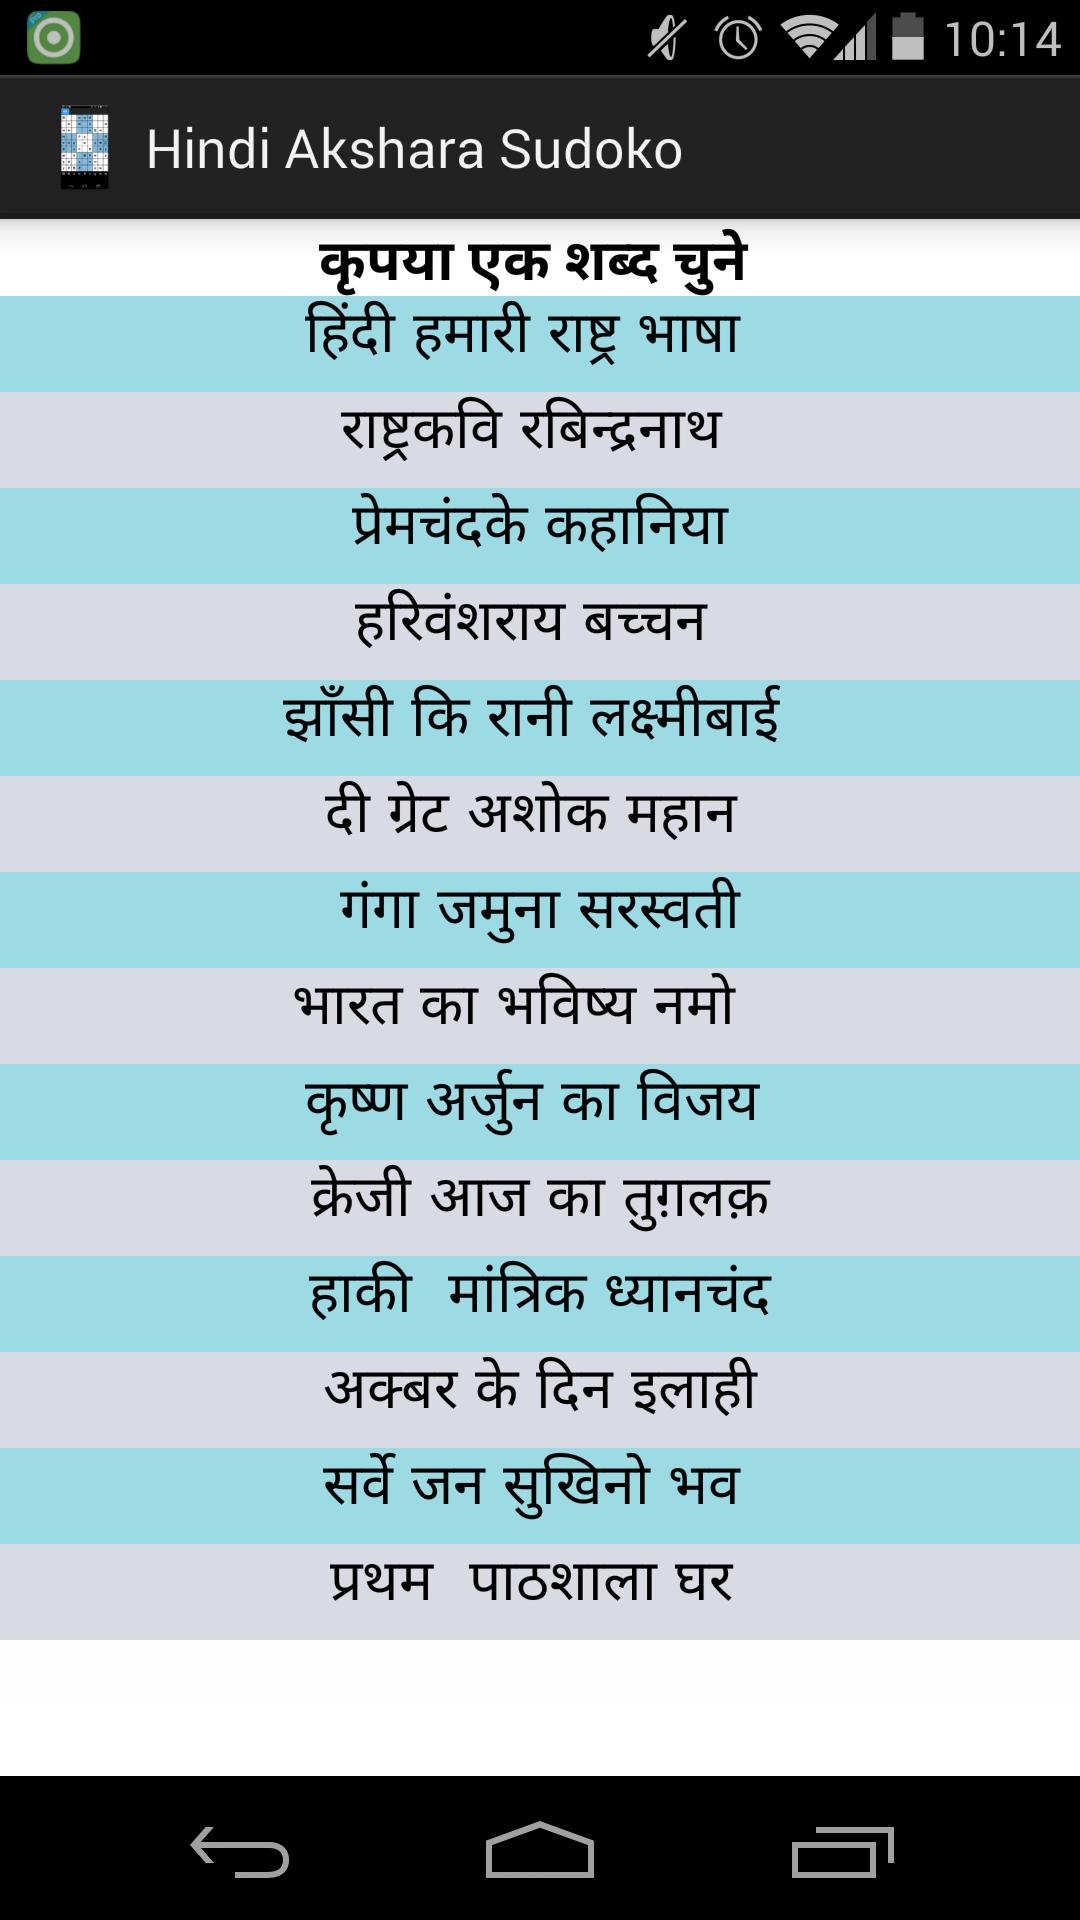 Hindi Akshara Sudoku For Android Apk Download